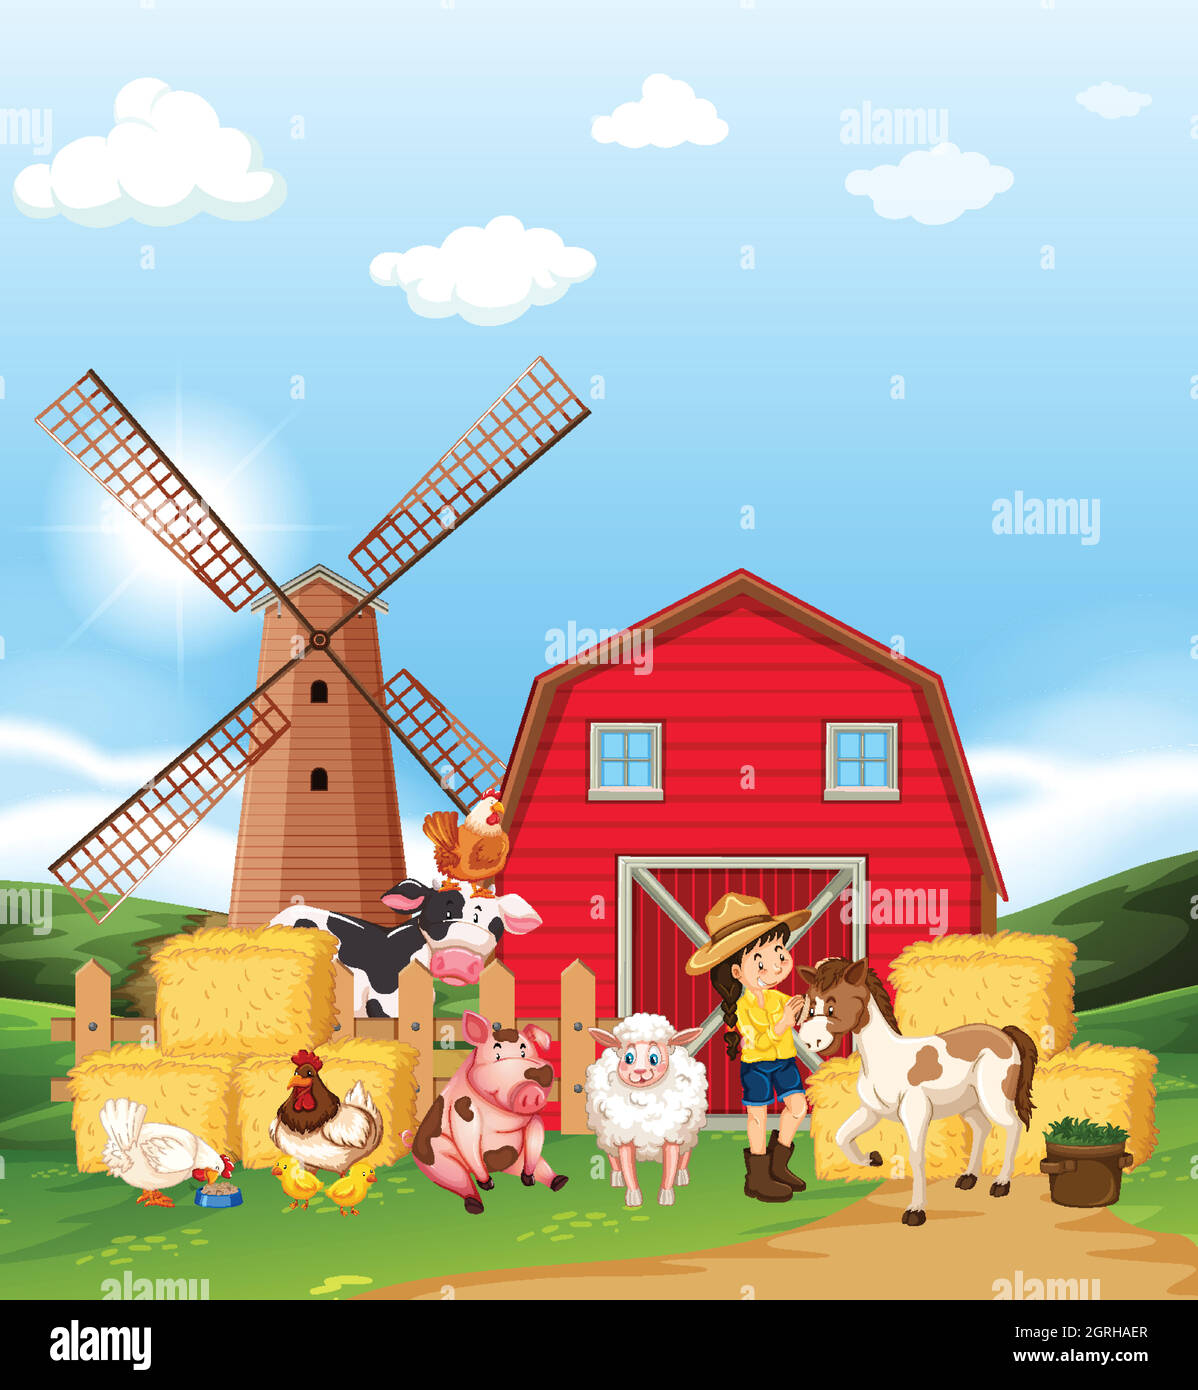 Farm scene with farmer and many animals on the farm Stock Vector